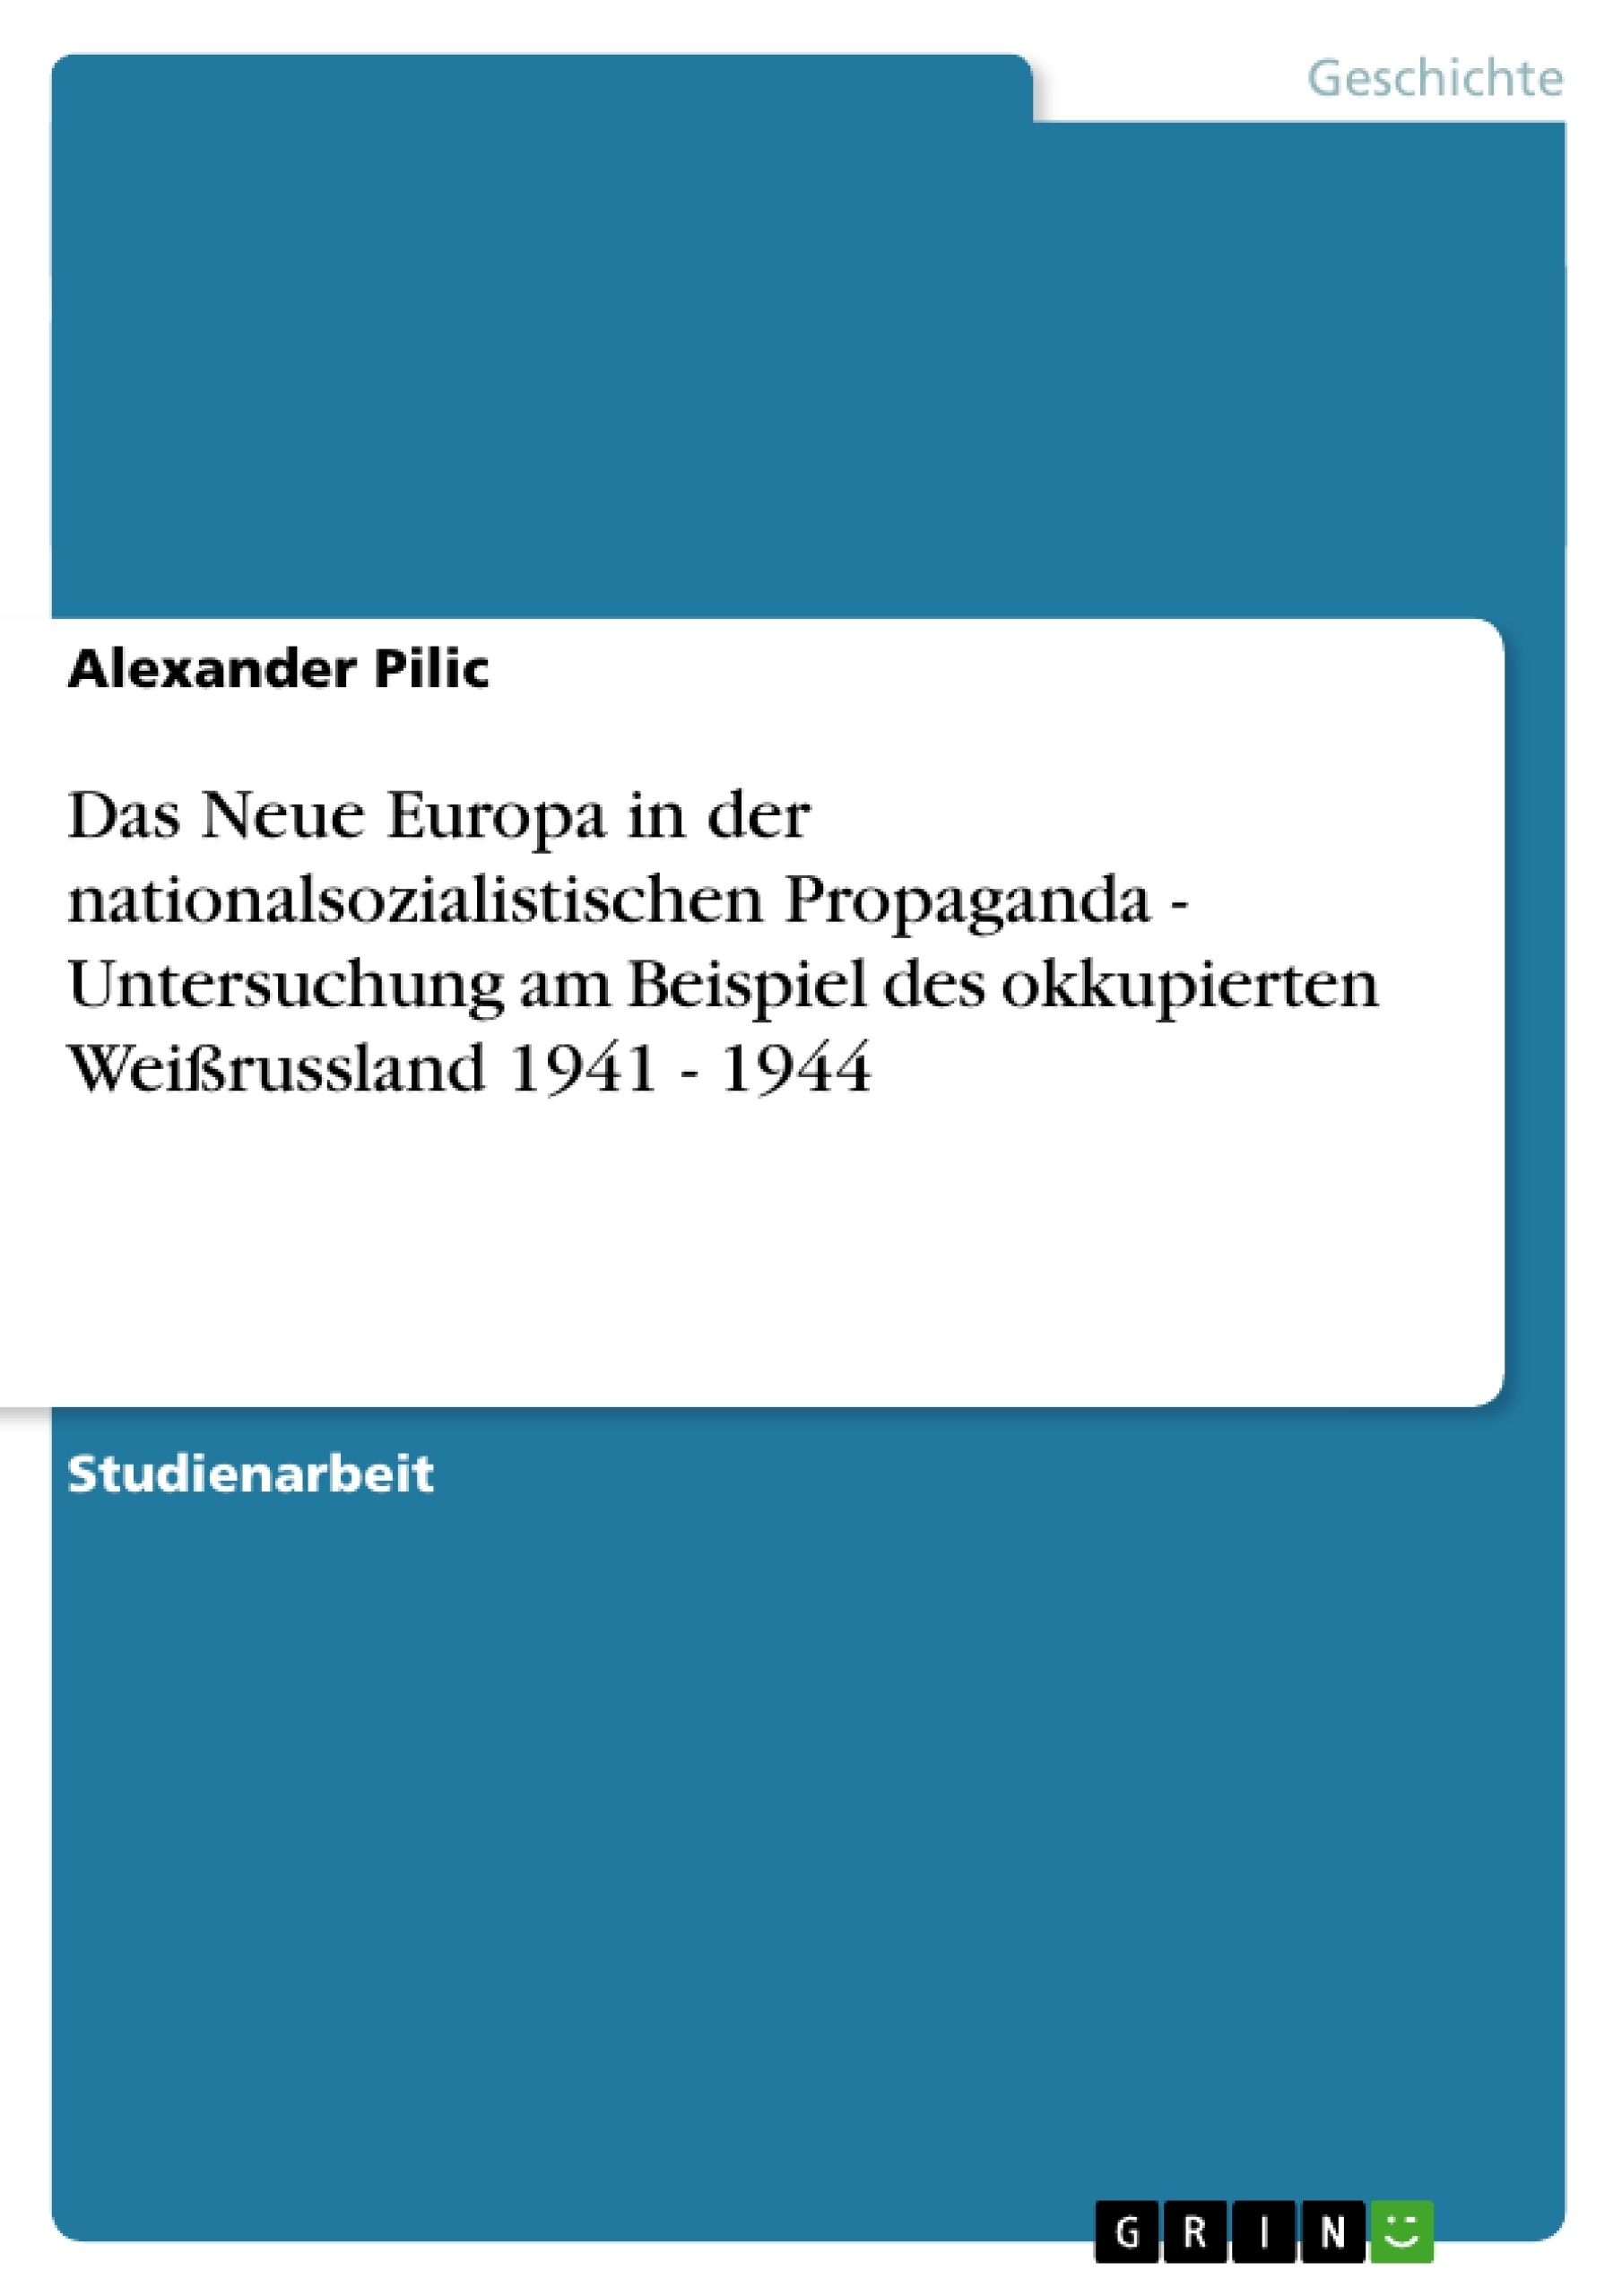 Titre: Das Neue Europa in der nationalsozialistischen Propaganda - Untersuchung am Beispiel des okkupierten Weißrussland 1941 - 1944